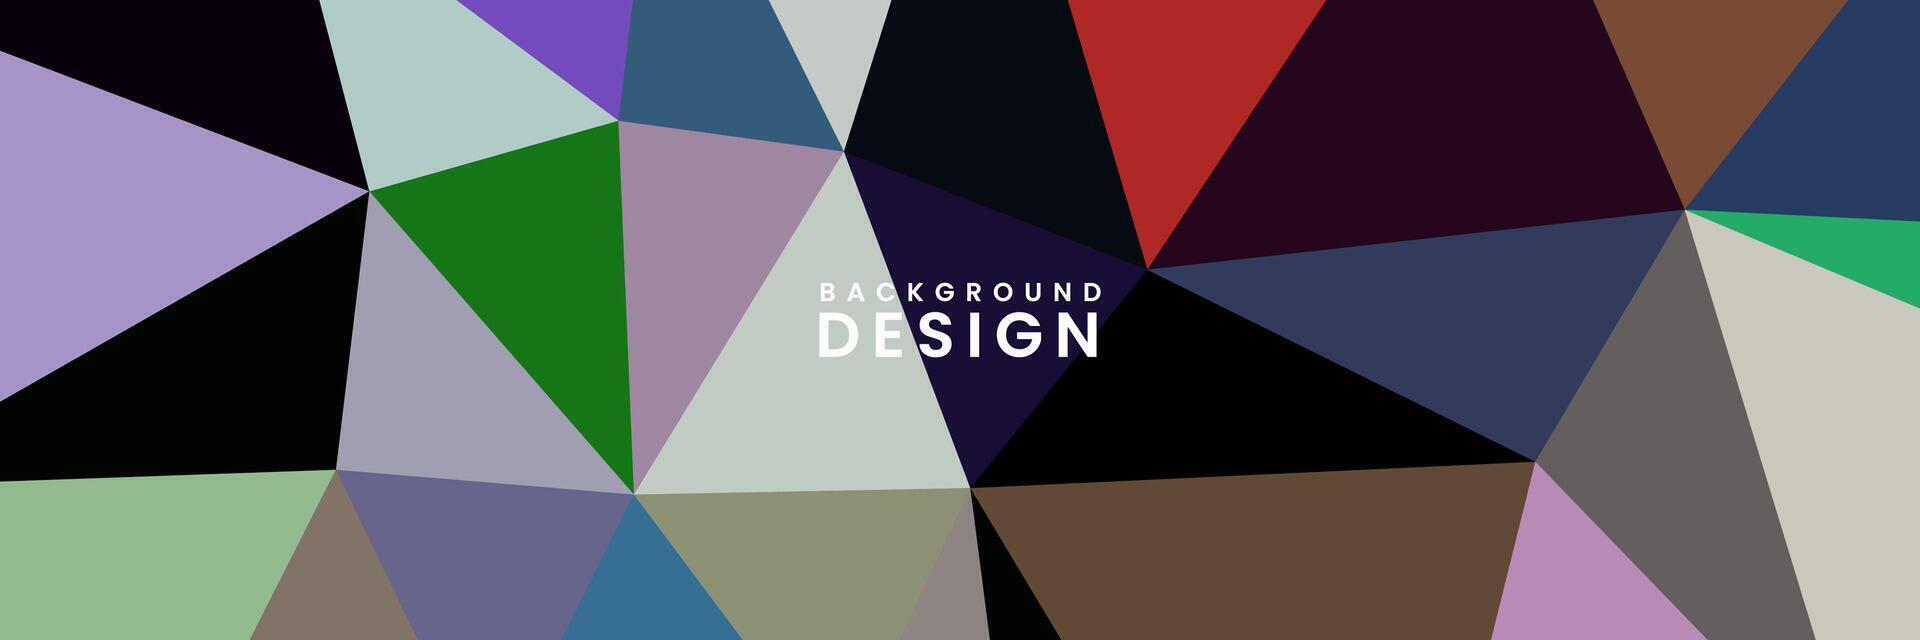 abstrakt elegant bakgrund med trianglar och klassisk vibrerande Färg vektor